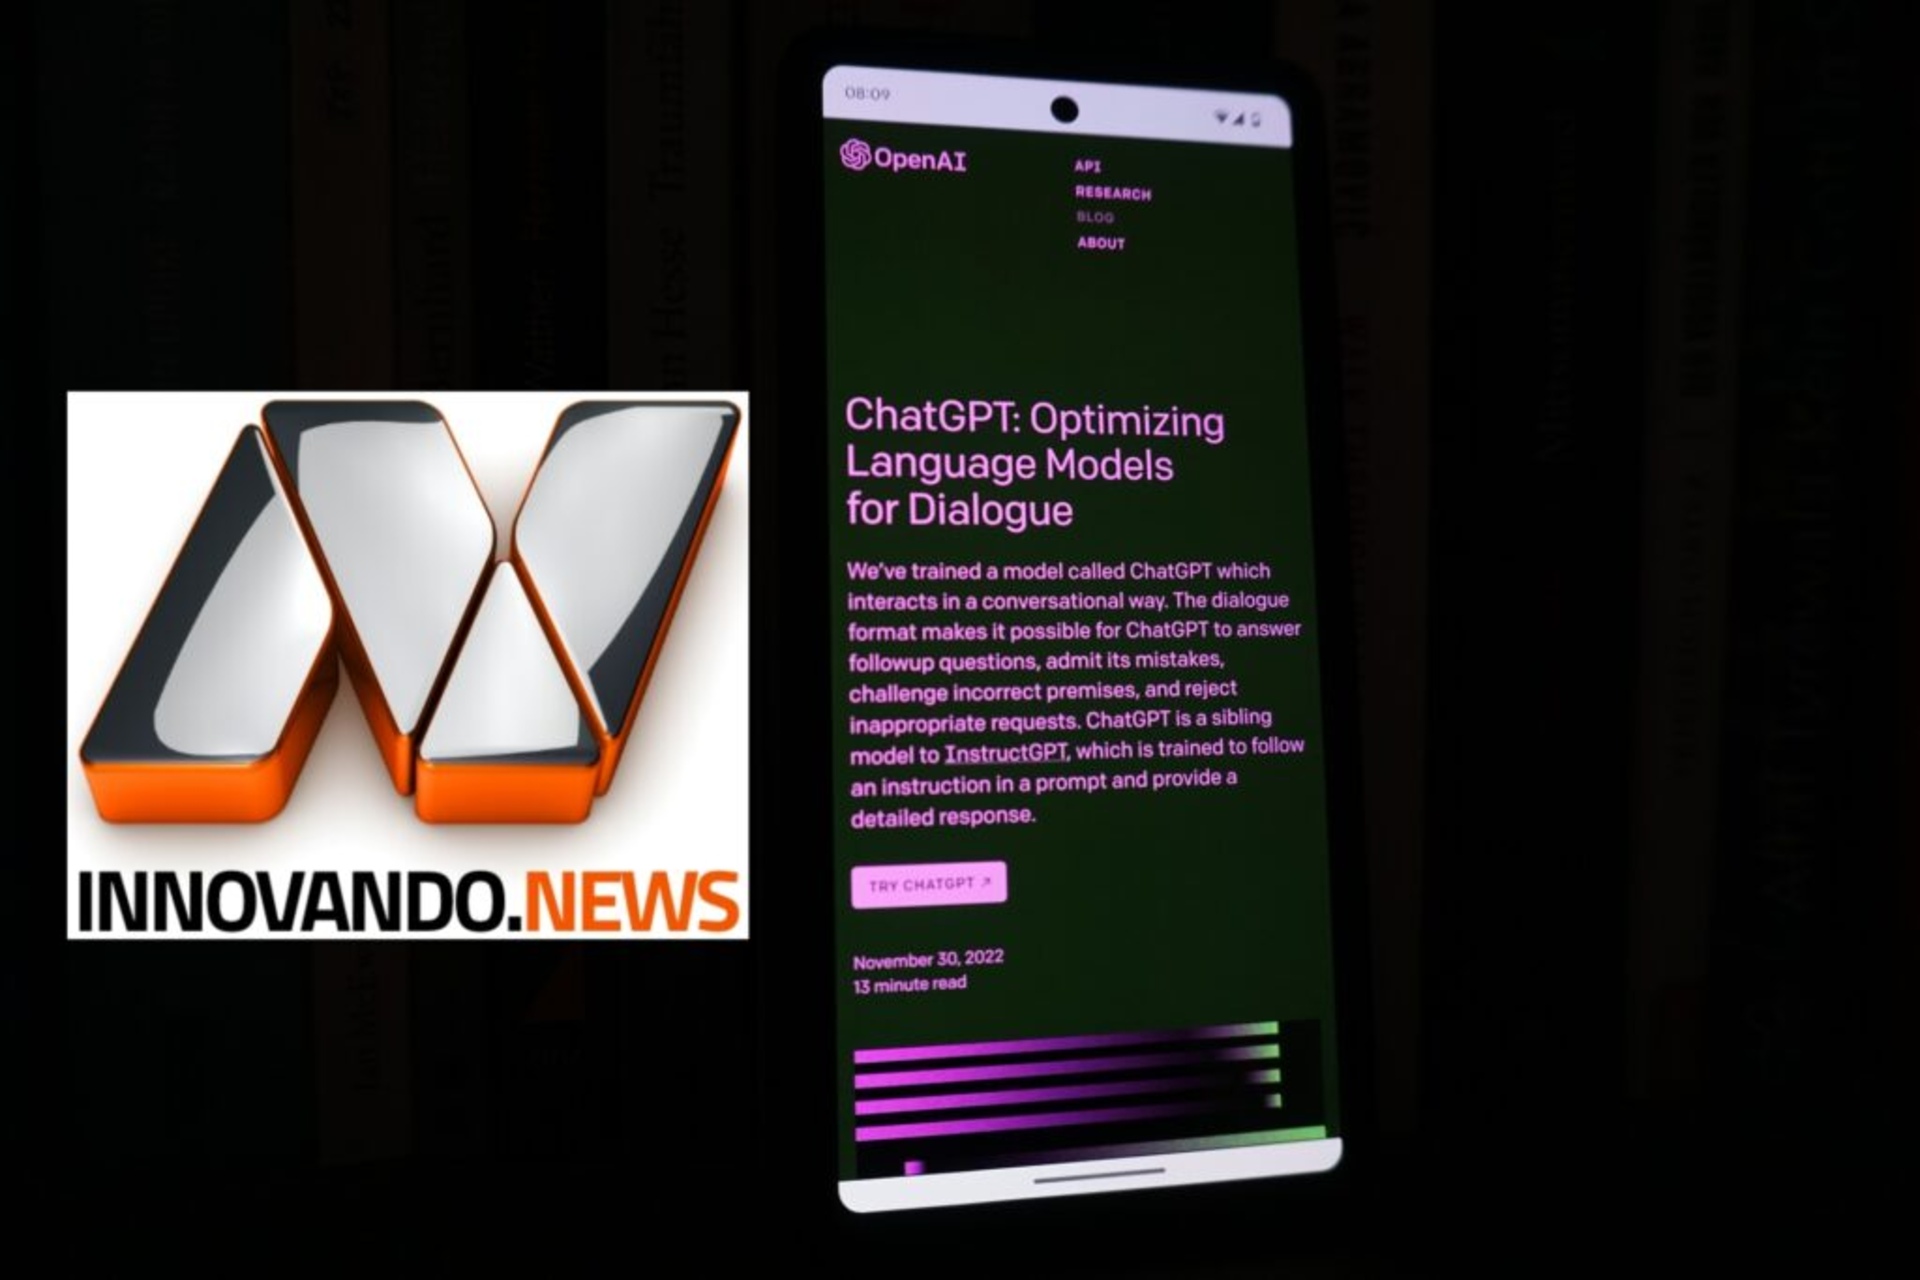 नवाचार और पत्रकारिता: Innovando.News का वर्णन करने के लिए ChatGPT के साथ साक्षात्कार